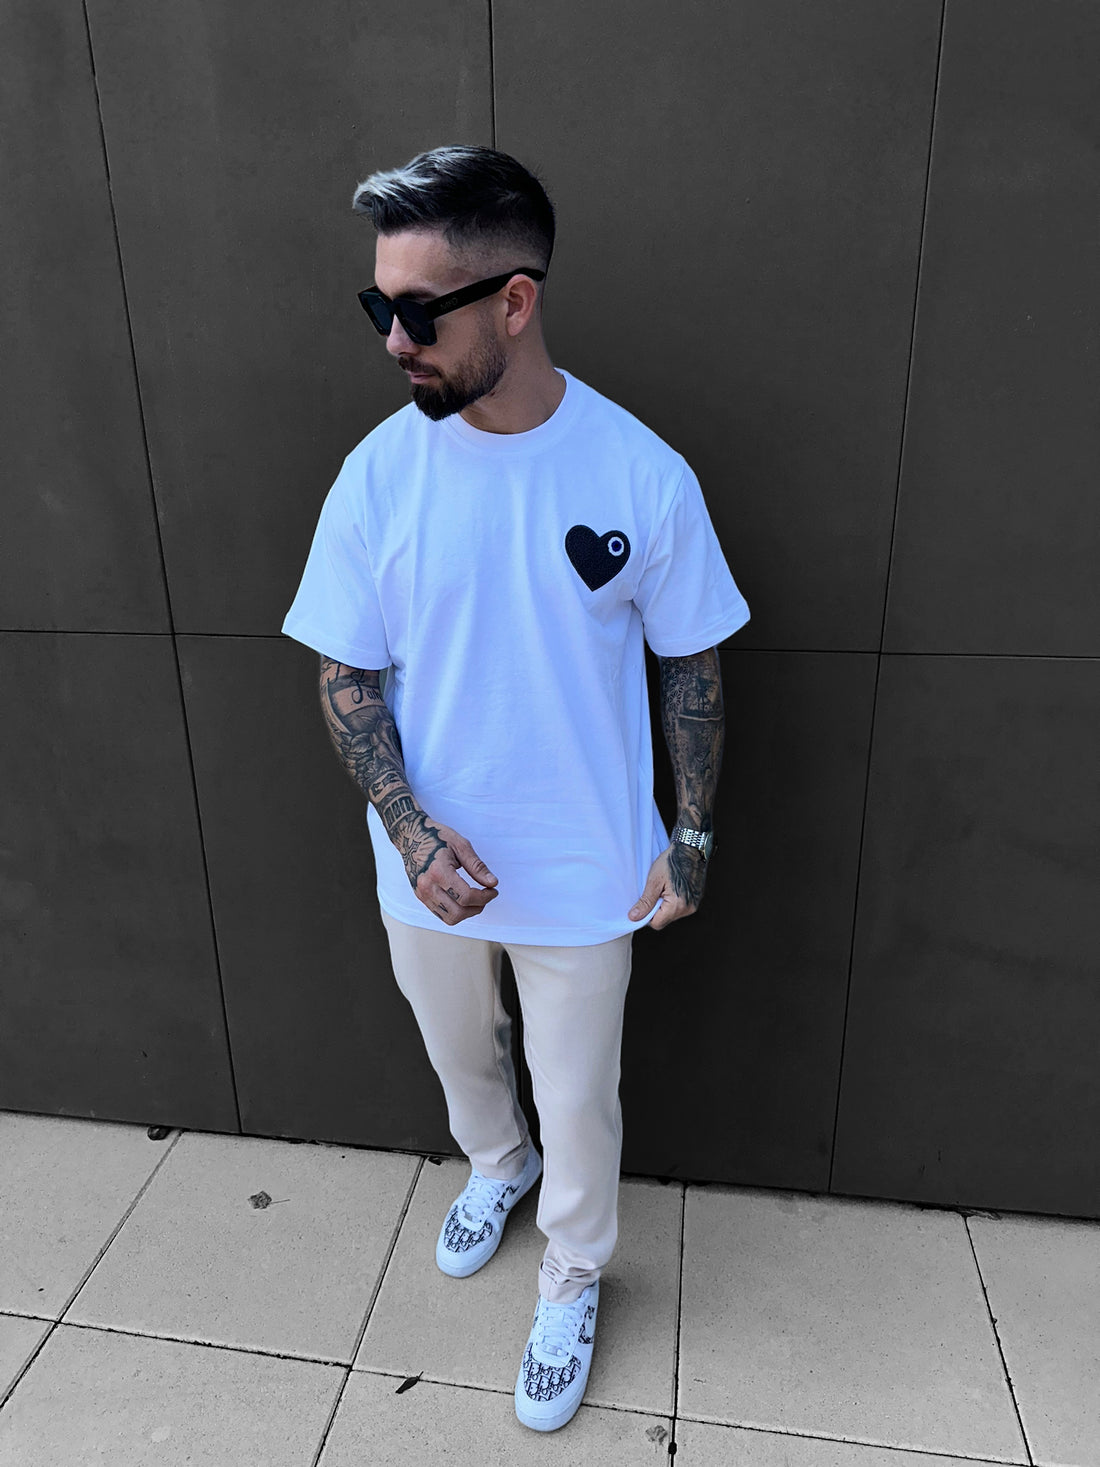 ADJ - White gray heart t-shirt